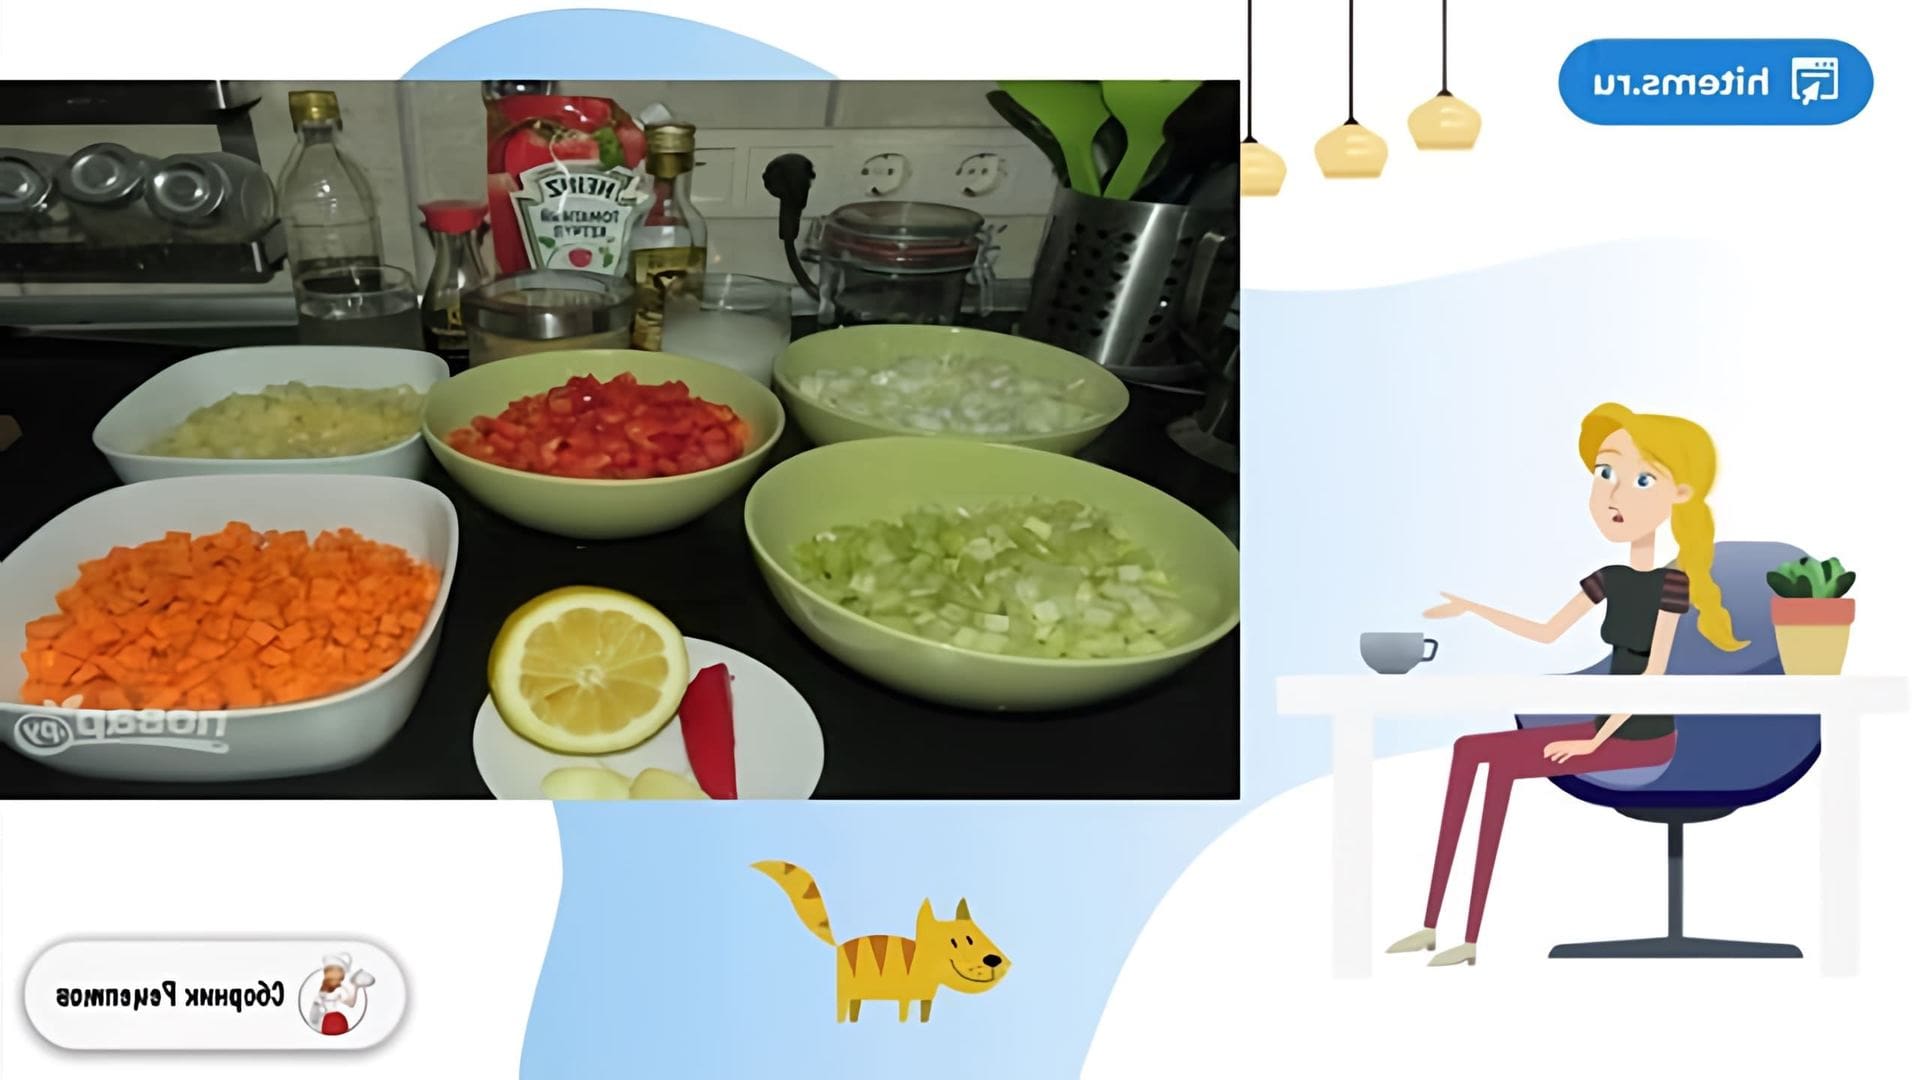 В этом видео демонстрируется рецепт кисло-сладкого соуса Анкл Бенс